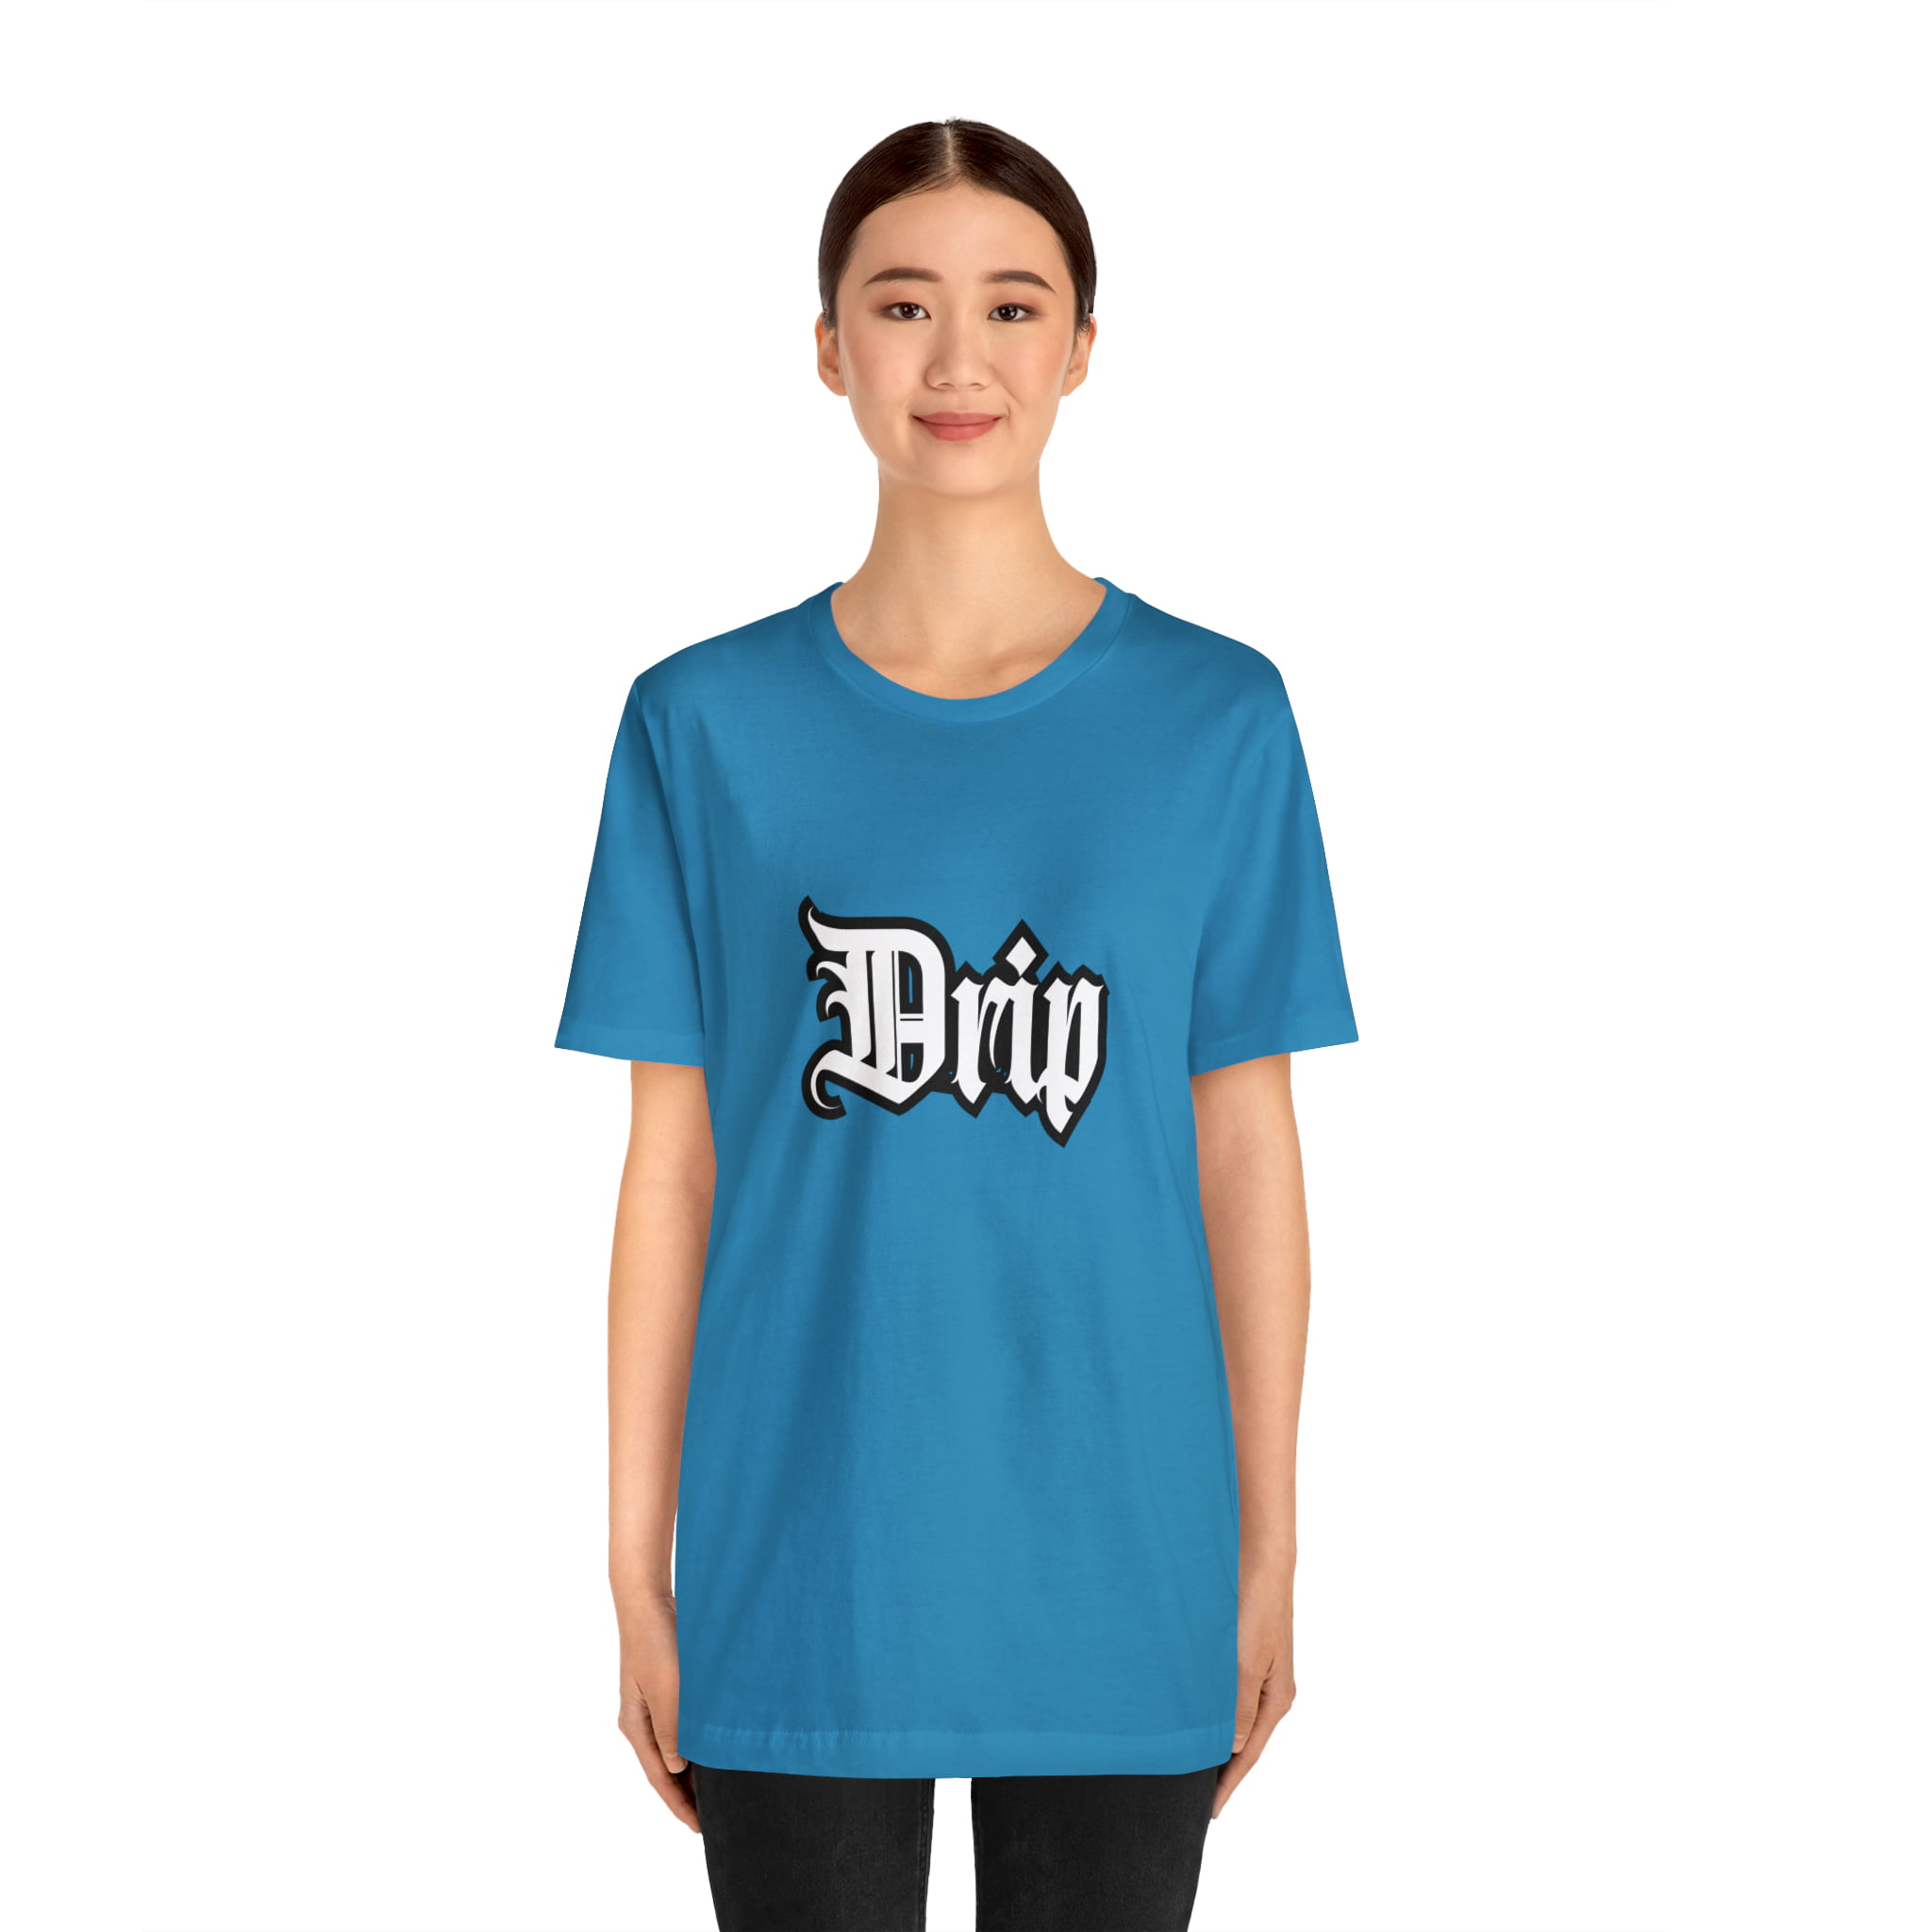 Drip Urban Streetwear Shirt | Drippin Statement T-Shirt